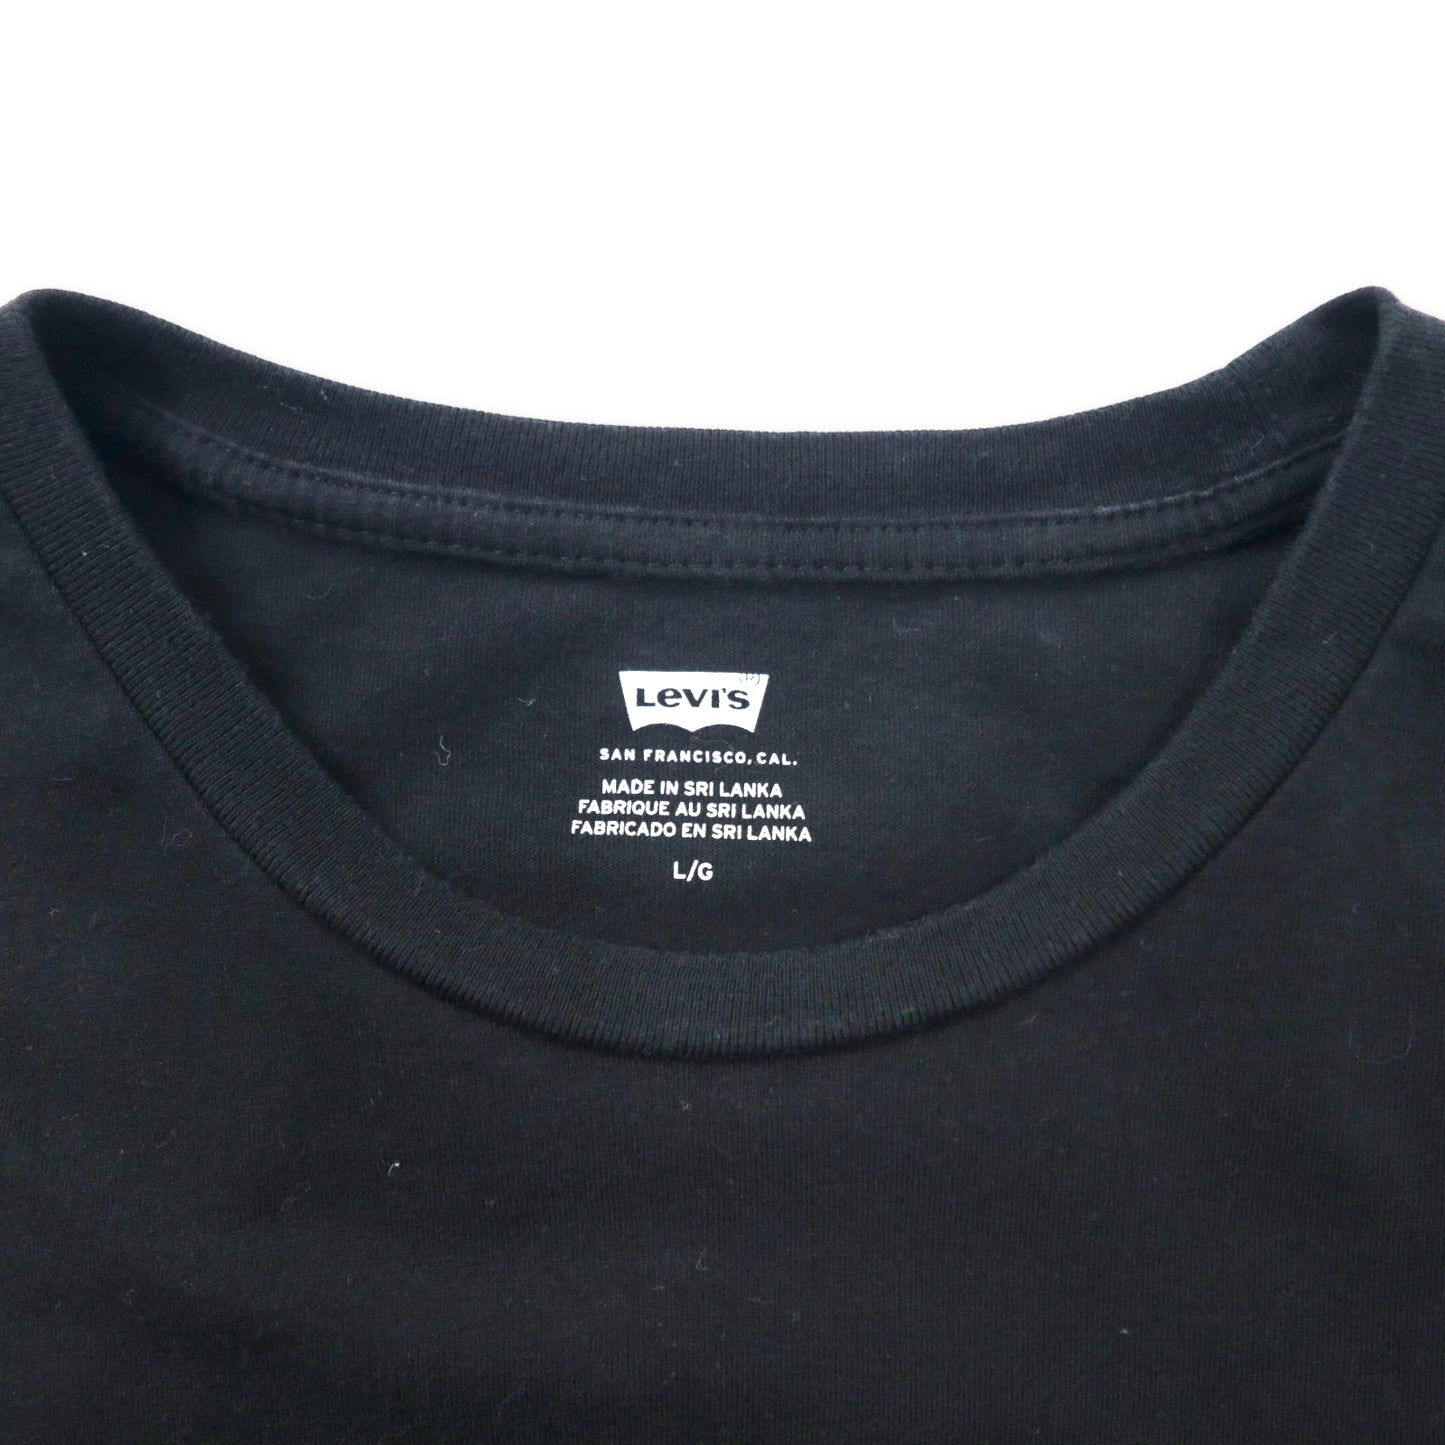 Levi's ロゴプリントTシャツ L ブラック コットン